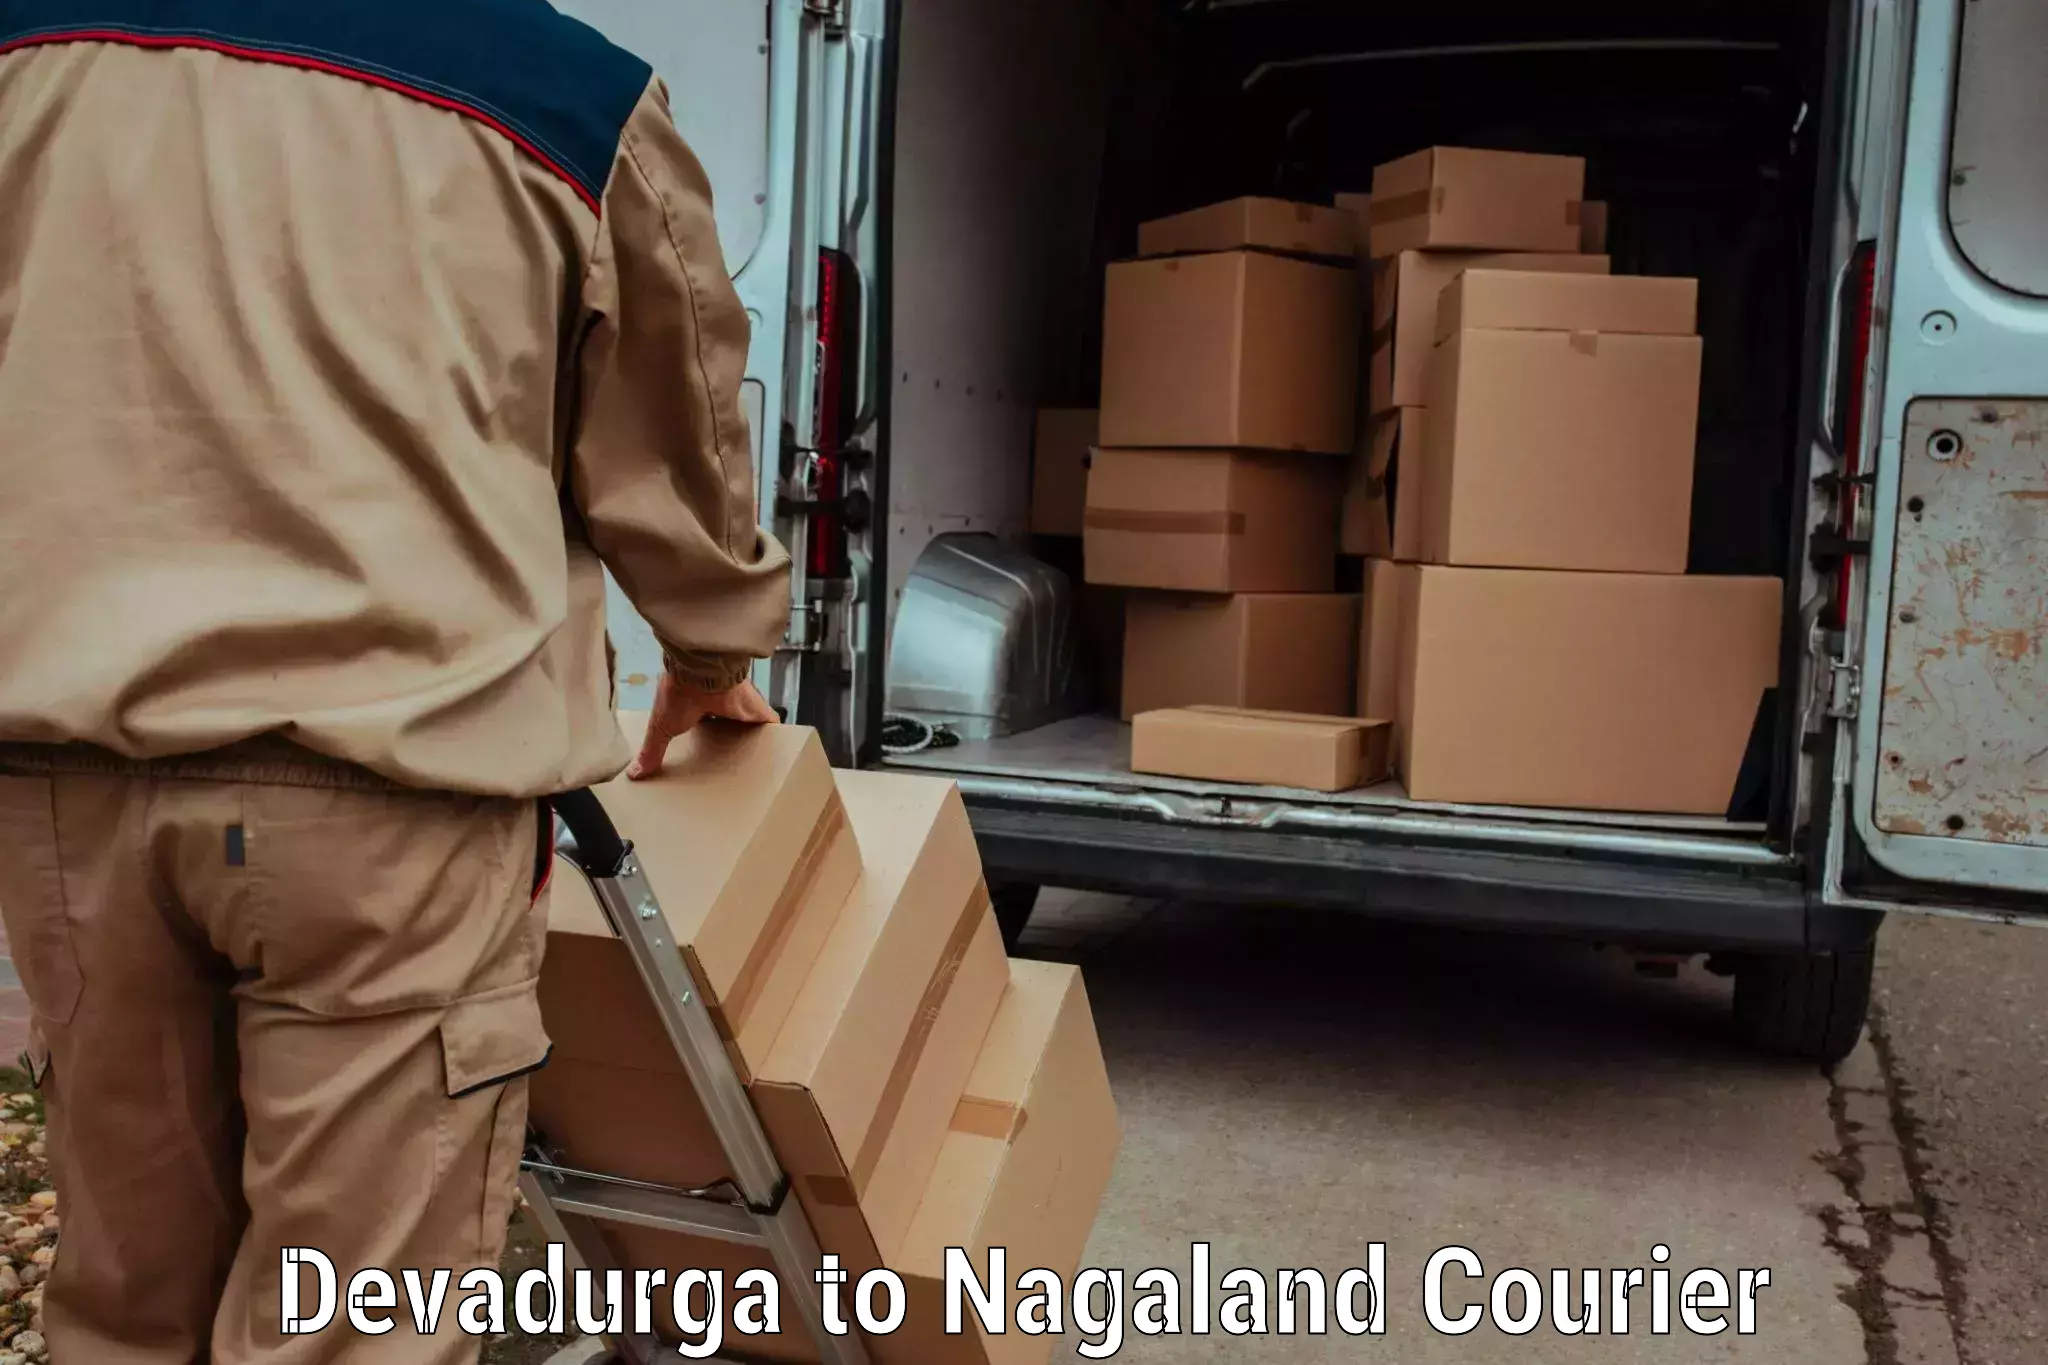 High-speed parcel service Devadurga to Mon